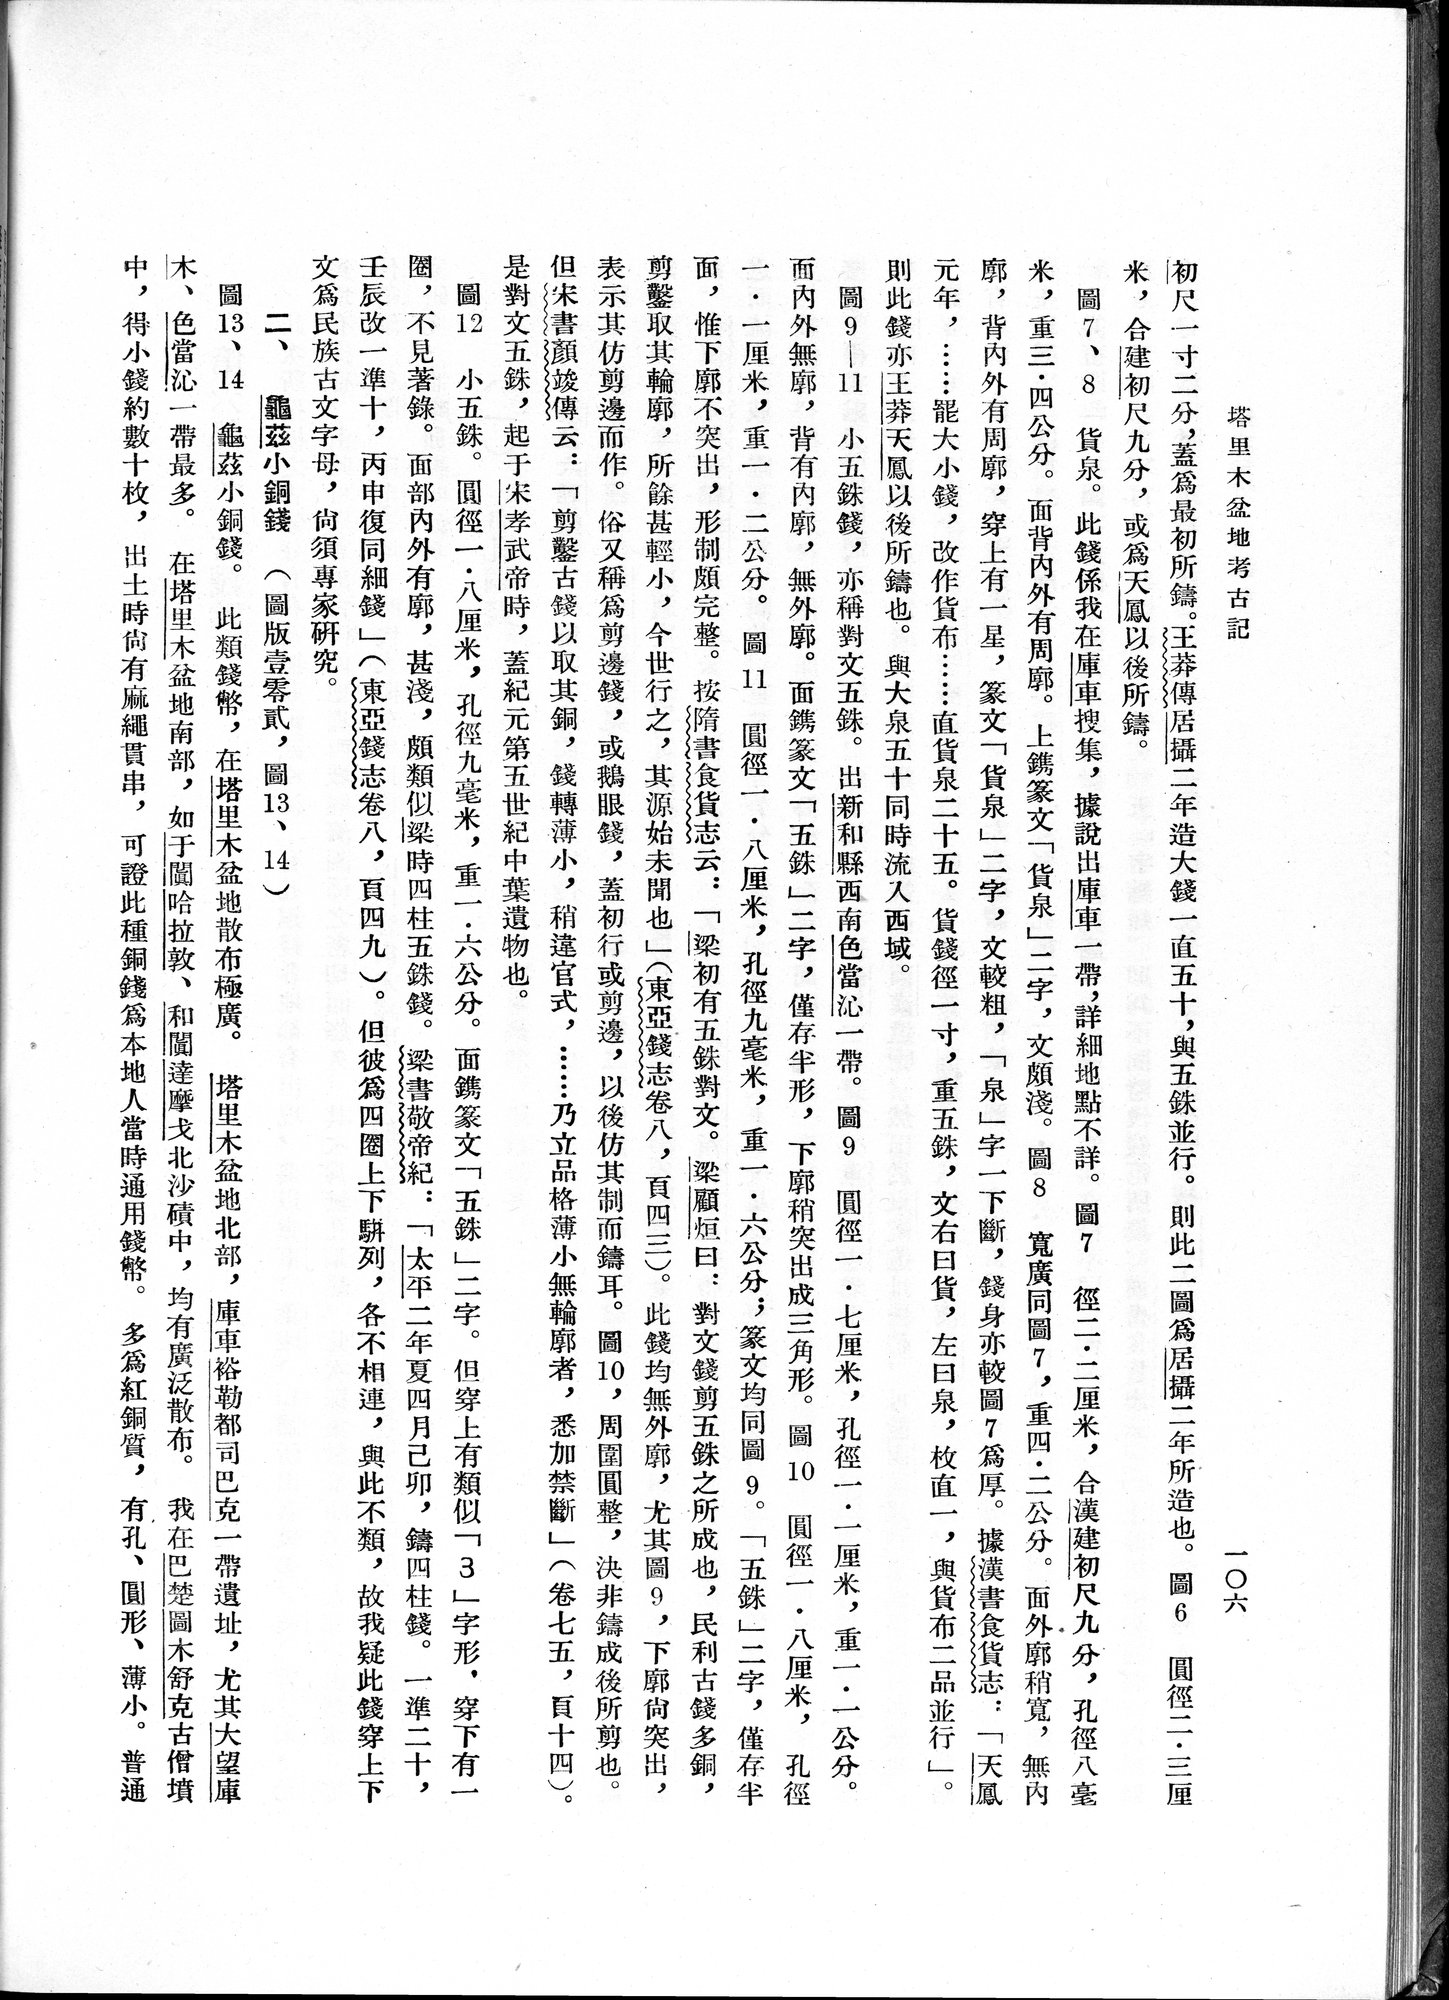 塔里木盆地考古記 : vol.1 / Page 170 (Grayscale High Resolution Image)